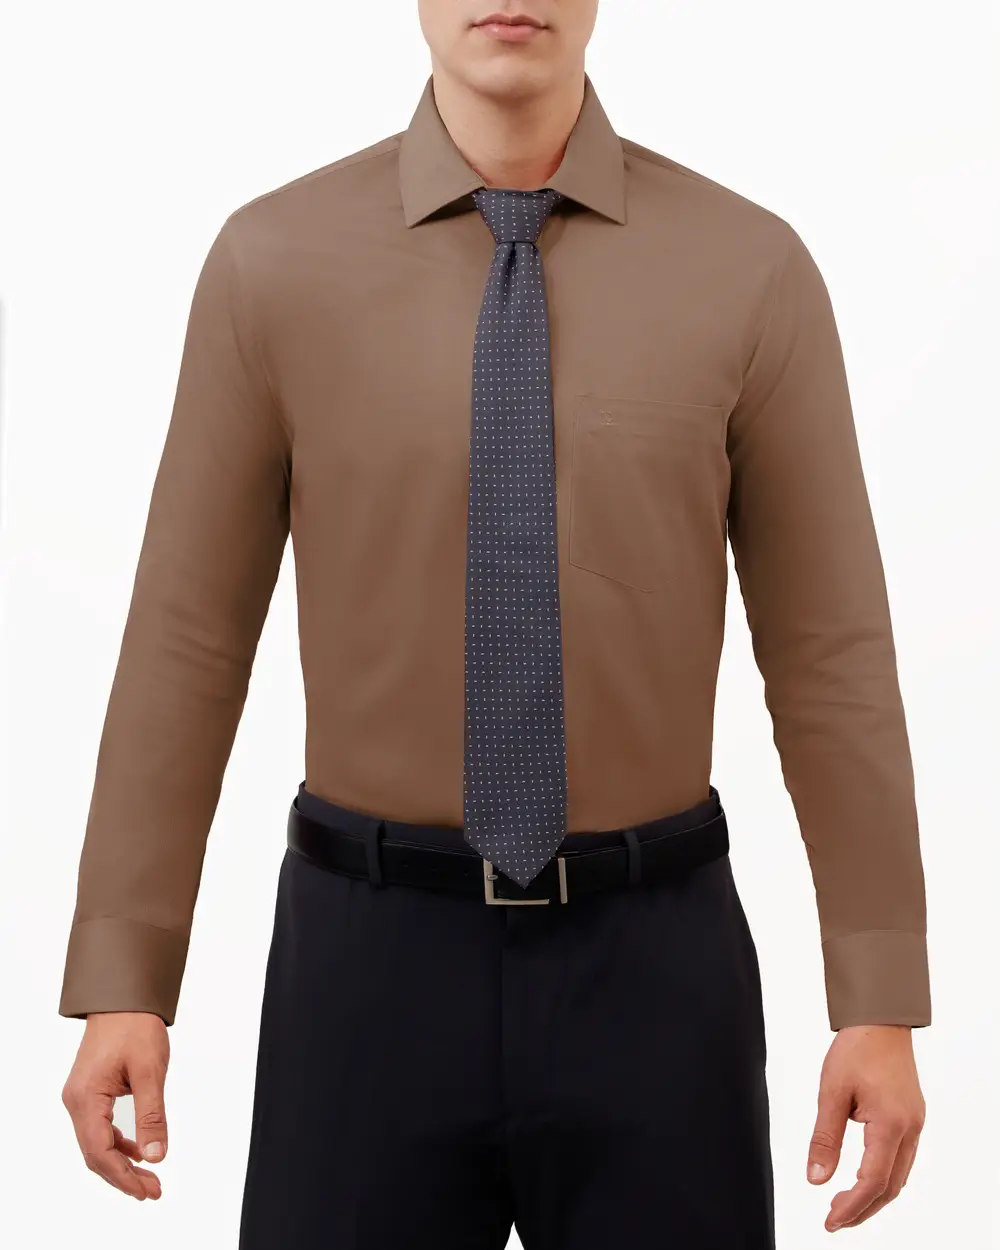 Camisa lisa de vestir slim fit manga larga   pique color cafe
